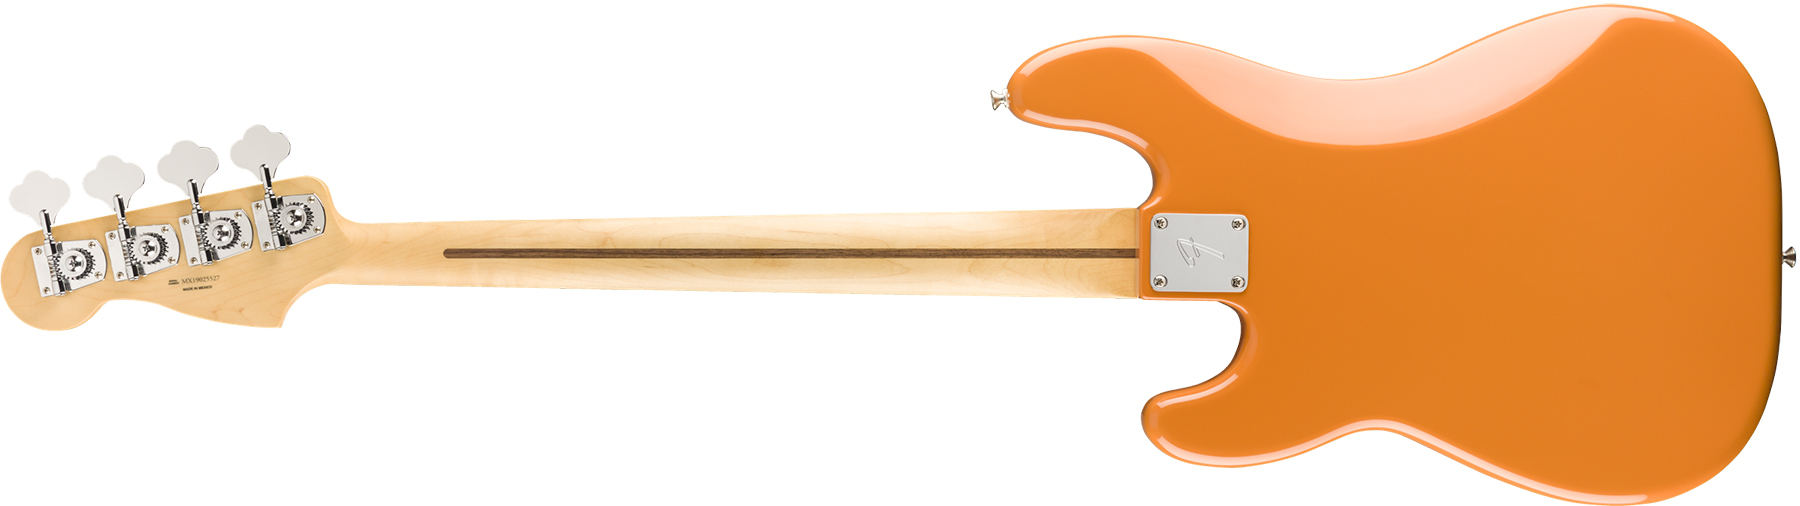 Fender Precision Bass Player Mex Pf - Capri Orange - Bajo eléctrico de cuerpo sólido - Variation 1